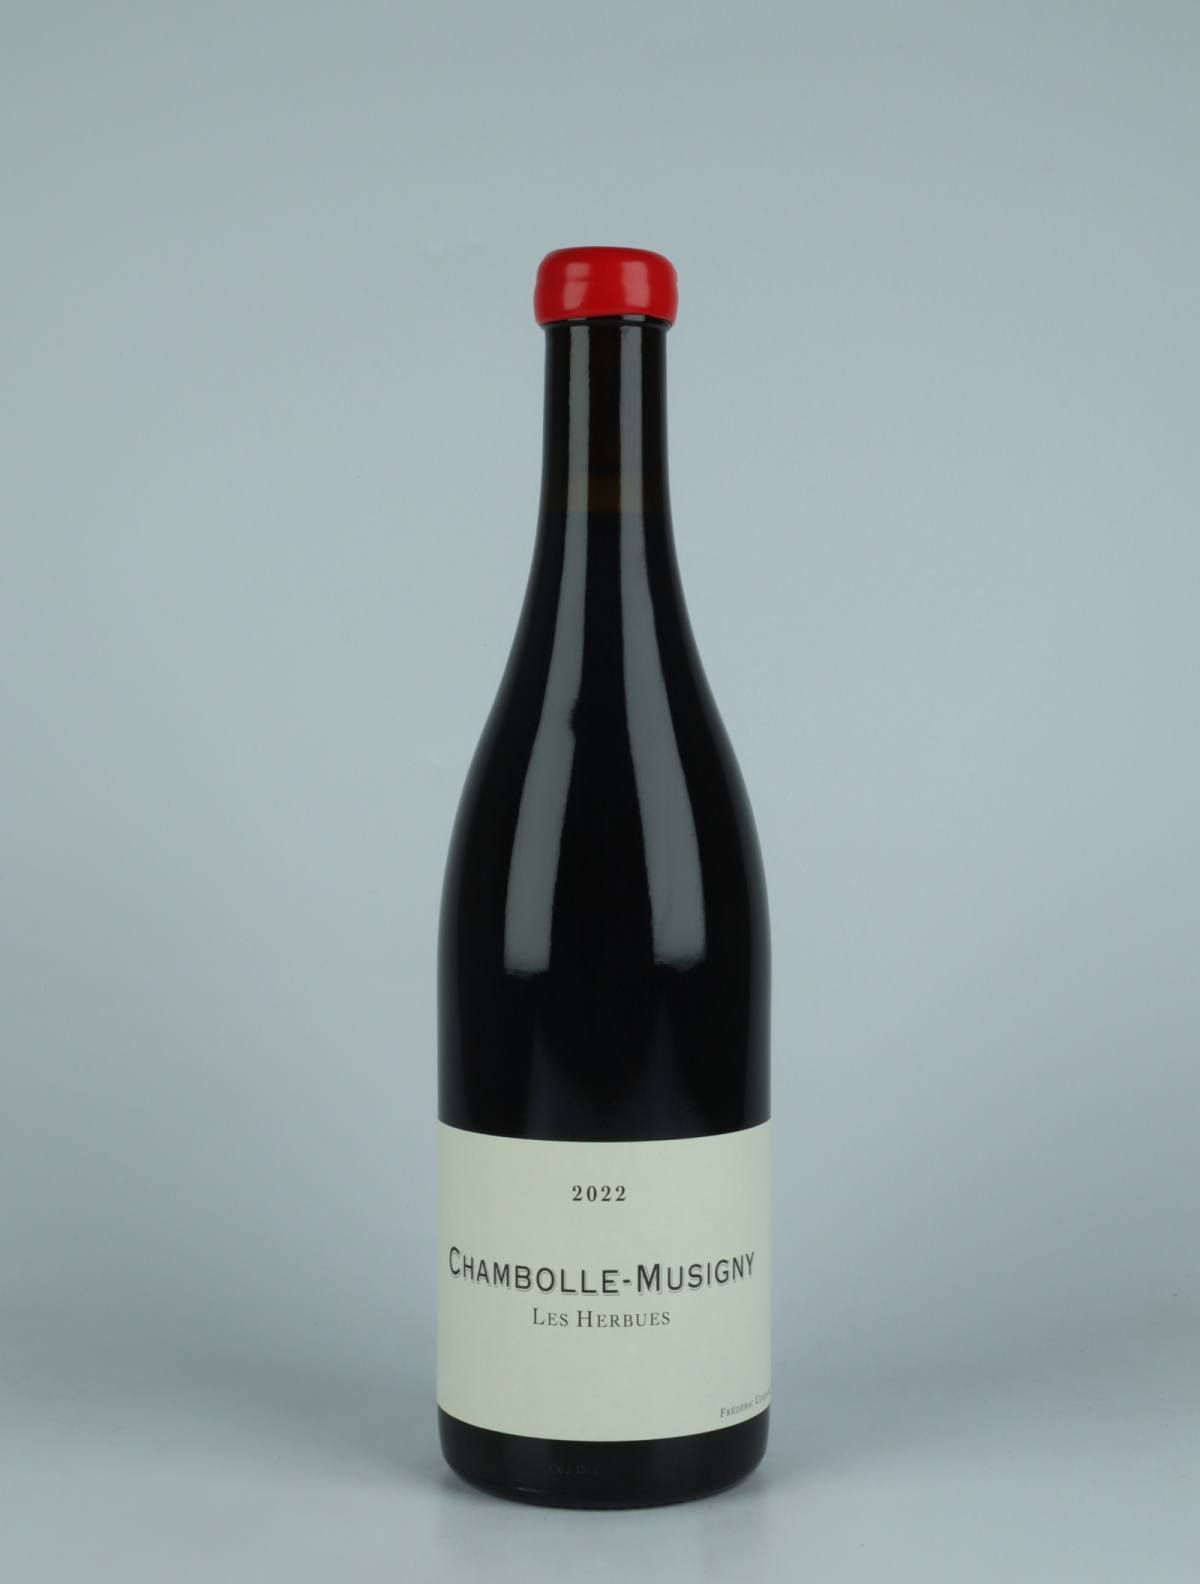 En flaske 2022 Chambolle Musigny - Les Herbues Rødvin fra Frédéric Cossard, Bourgogne i Frankrig